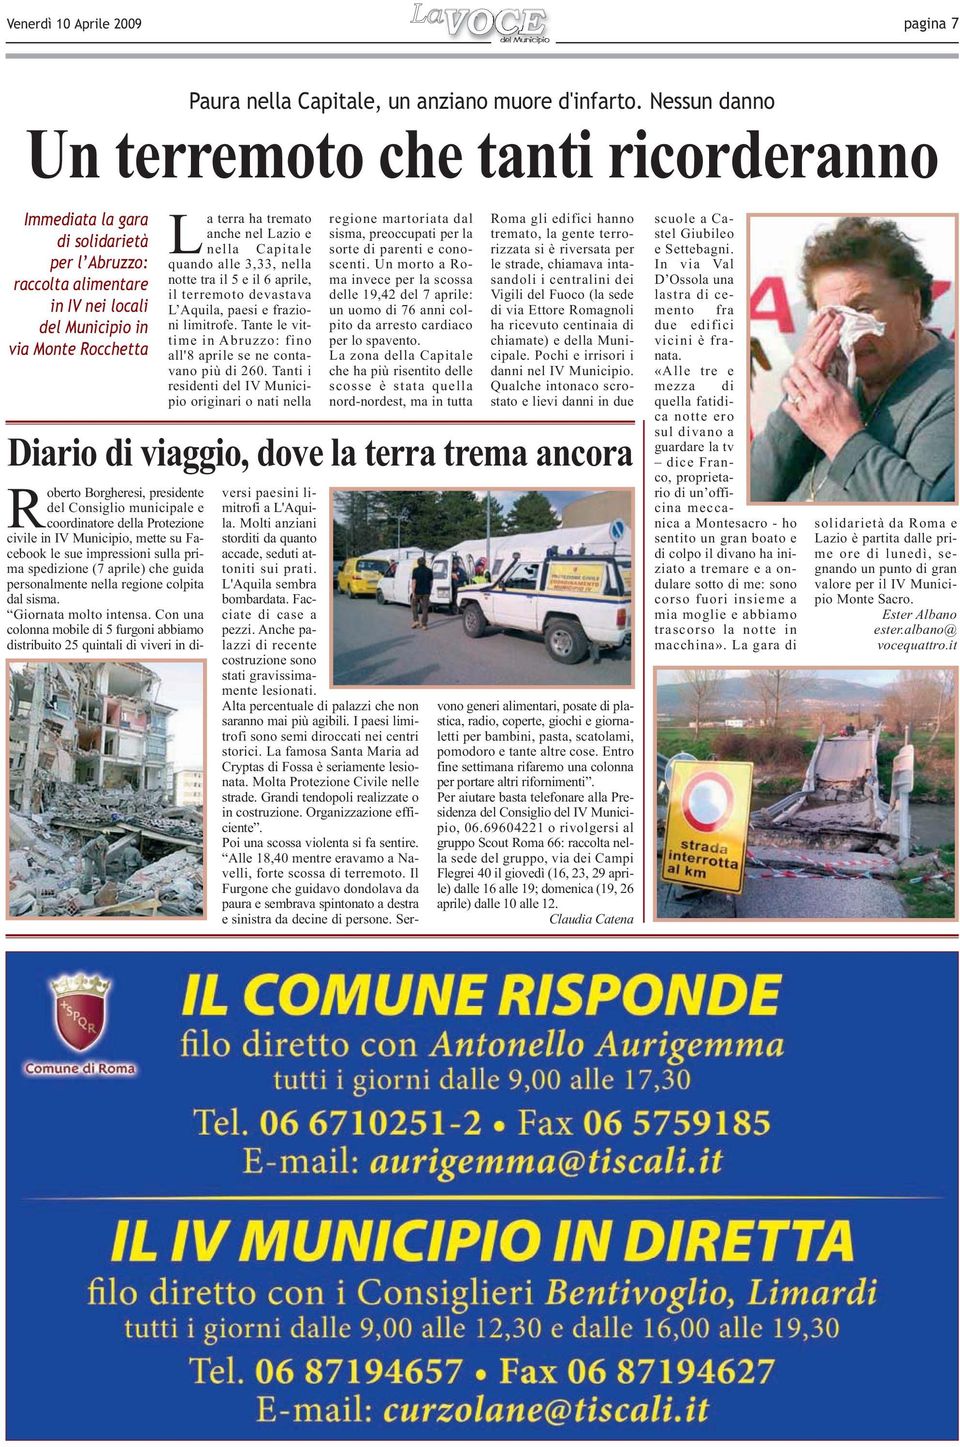 Lazio e nella Capitale quando alle 3,33, nella notte tra il 5 e il 6 aprile, il terremoto devastava L Aquila, paesi e frazioni limitrofe.